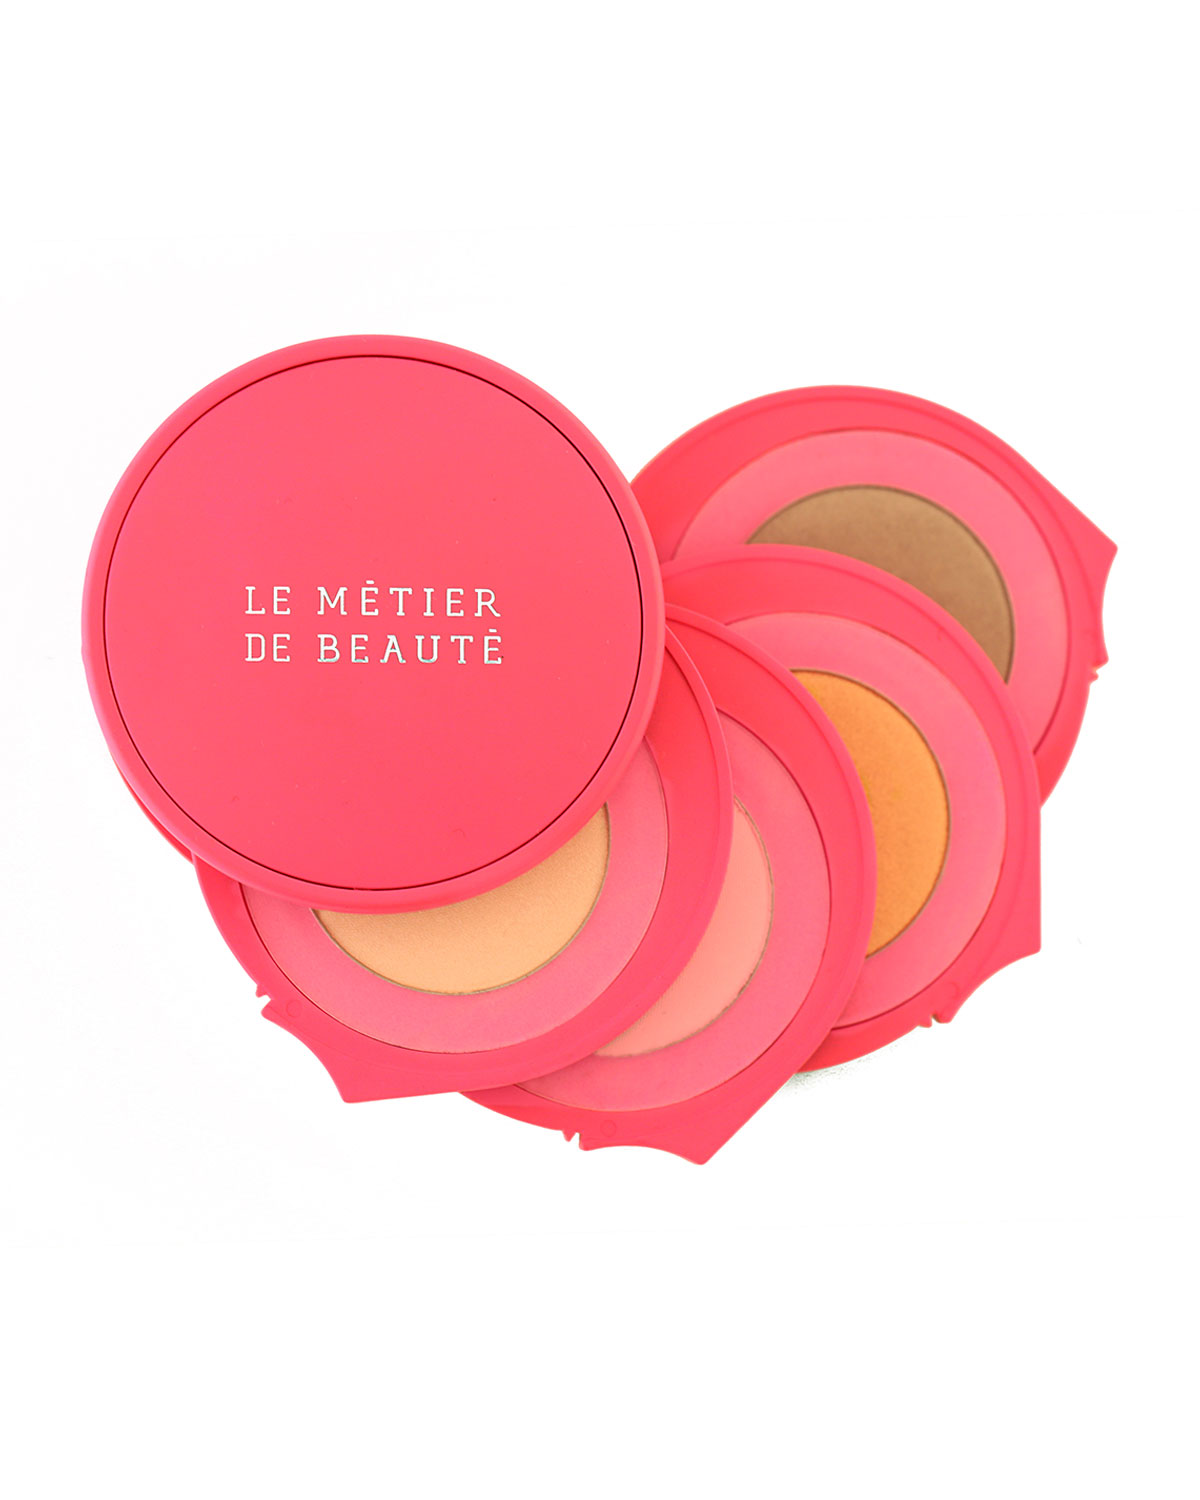 Le Metier de Beauté breast cancer awareness makeup palette 